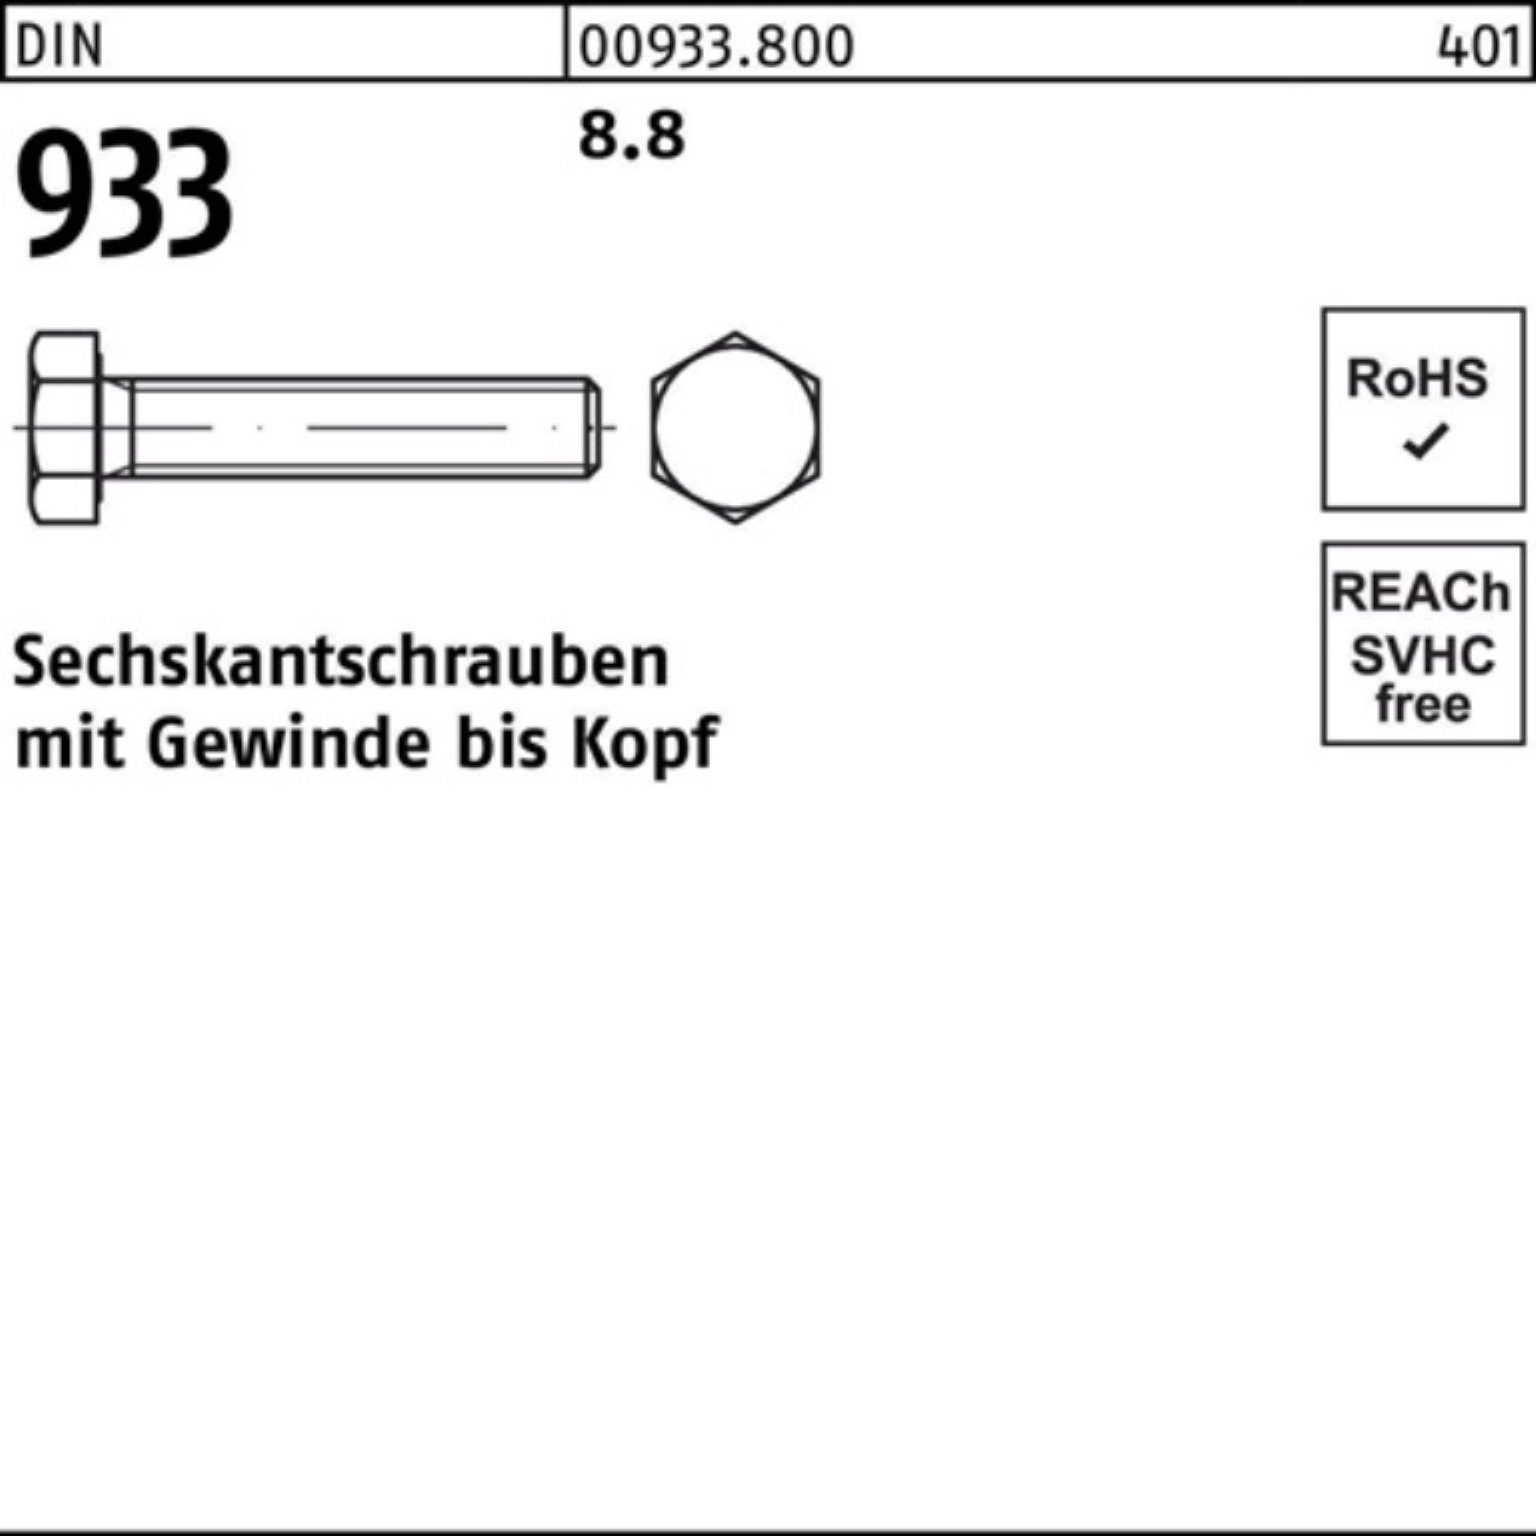 Pack 110 Sechskantschraube Reyher 100er Stück 8.8 933 1 933 Sechskantschraube M27x DIN VG DIN